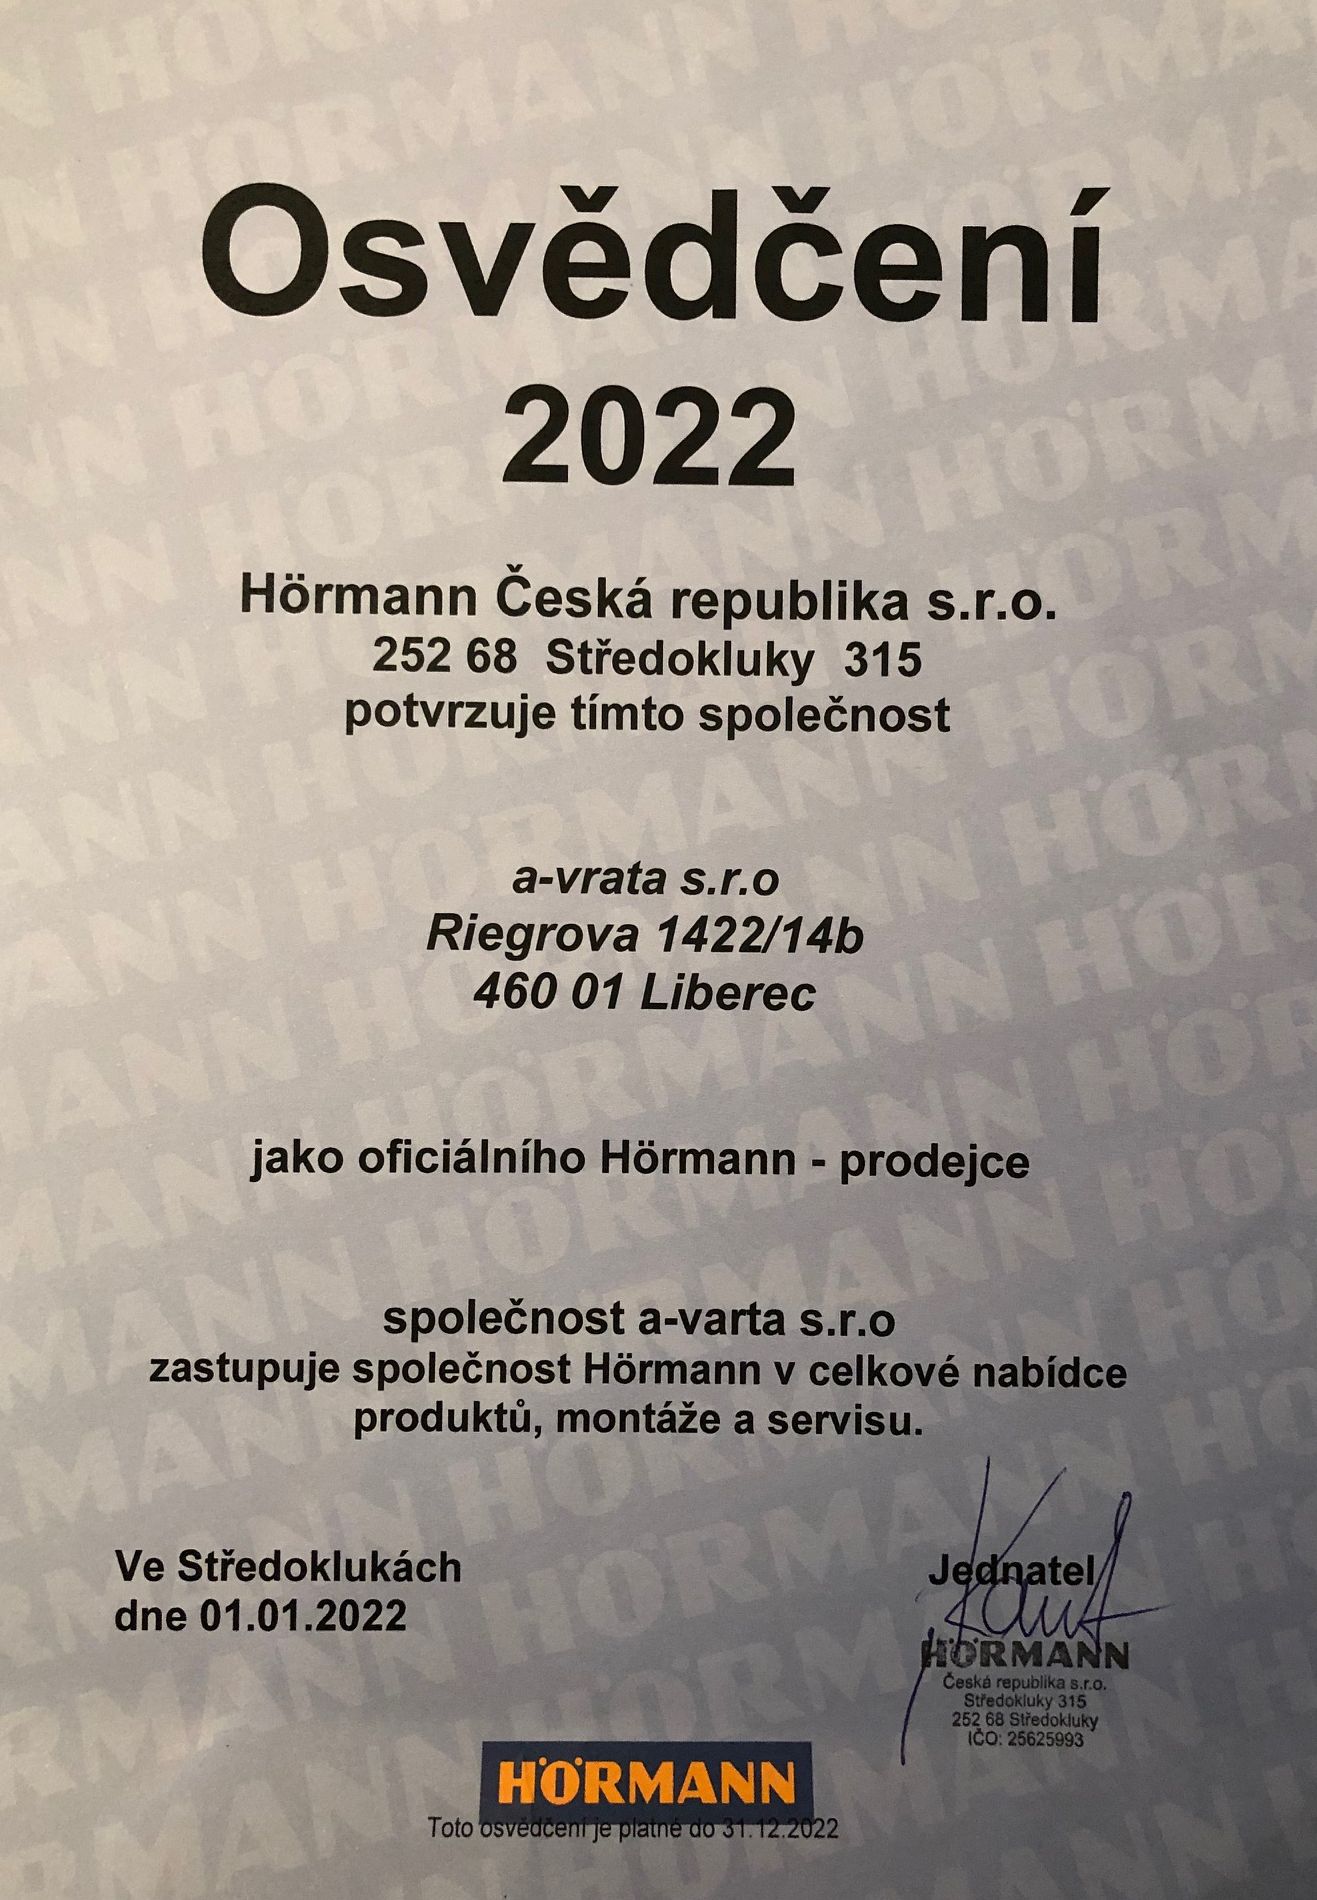 Osvědčení 2022